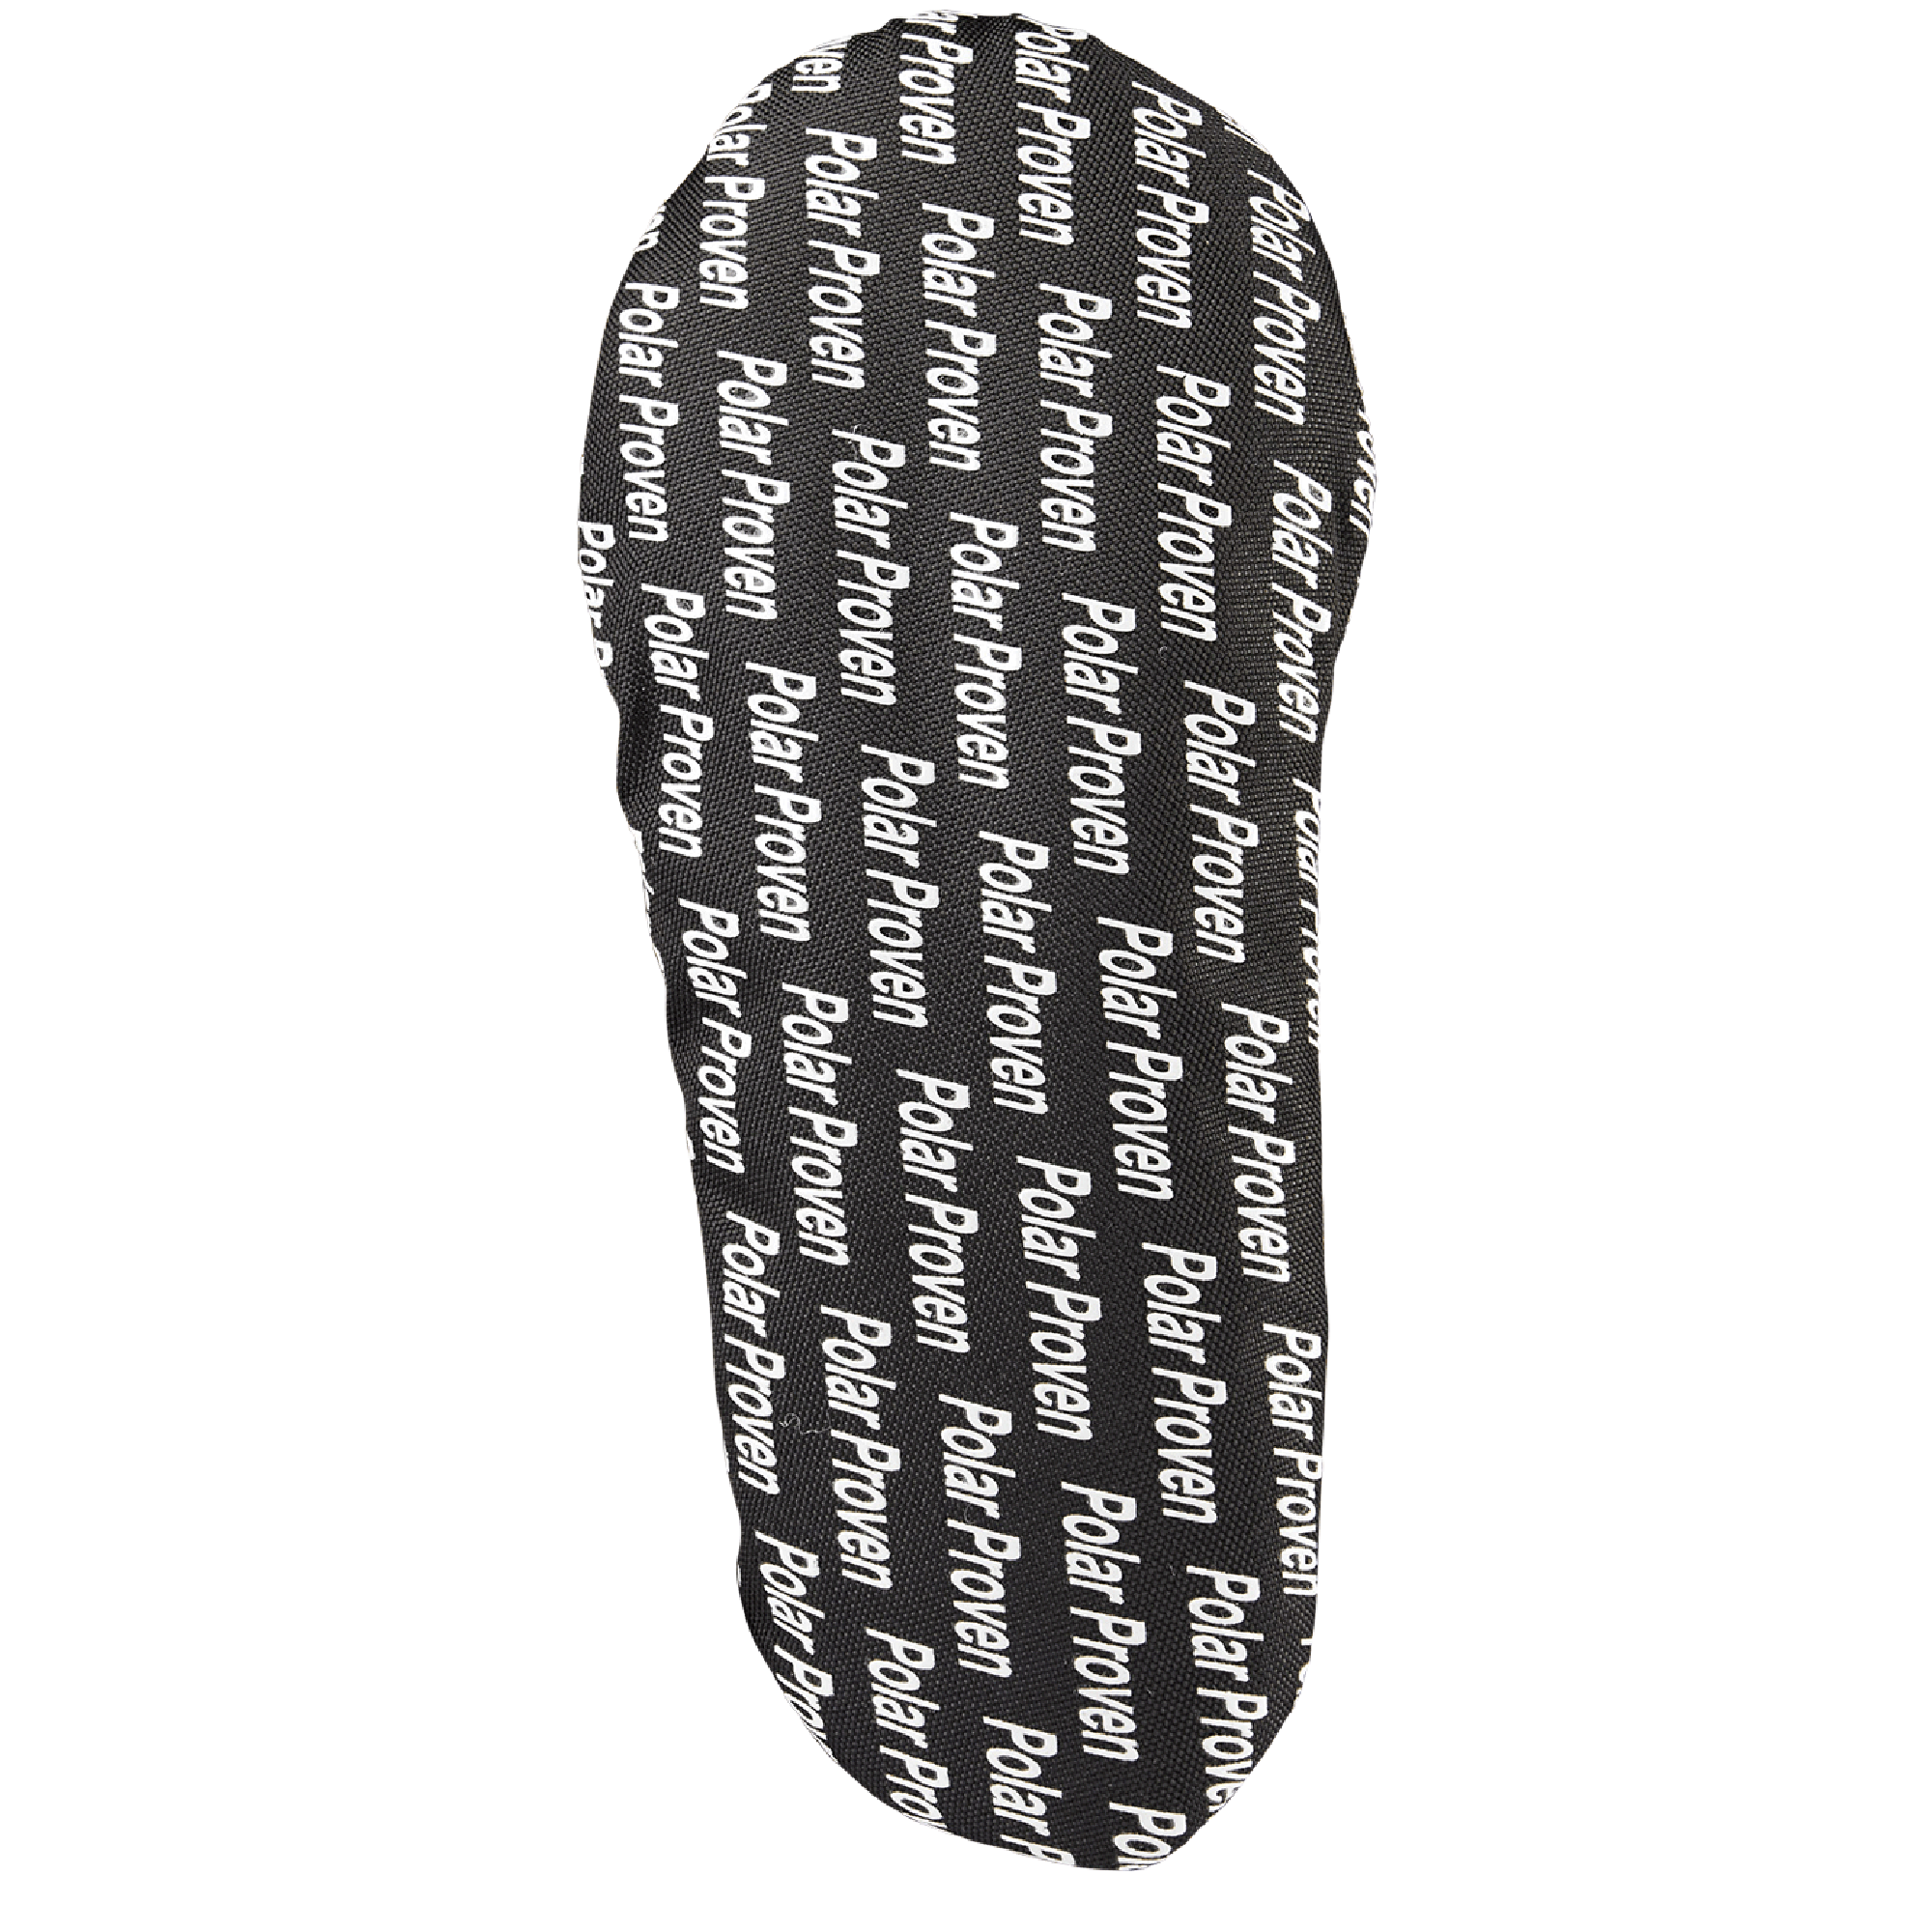 CUSH BOOTY | Unisex Hybrid Slipper